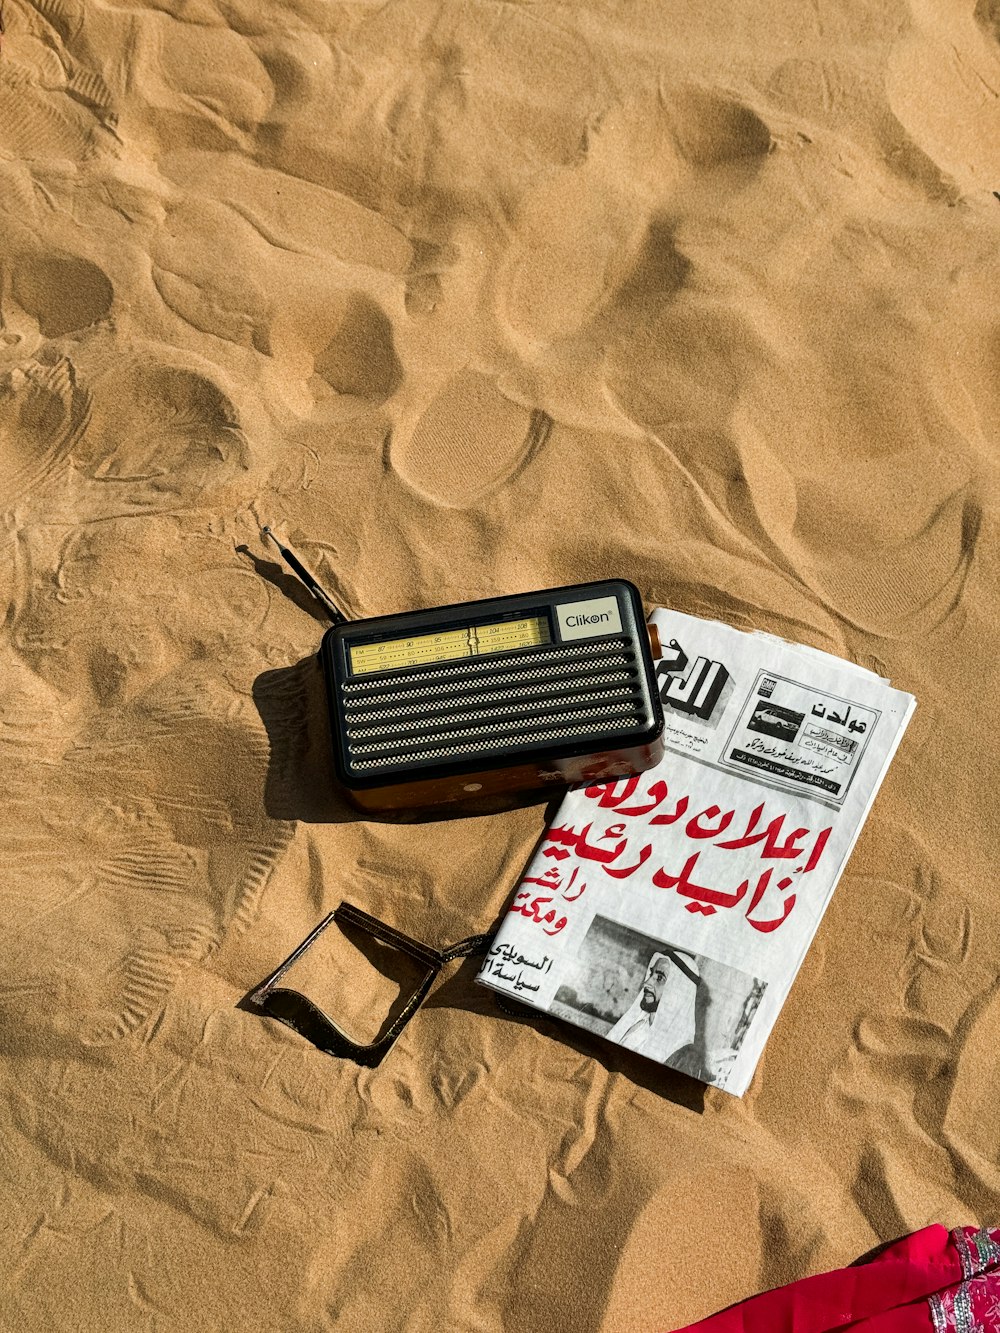 ein Radio und eine Sonnenbrille, die im Sand liegen